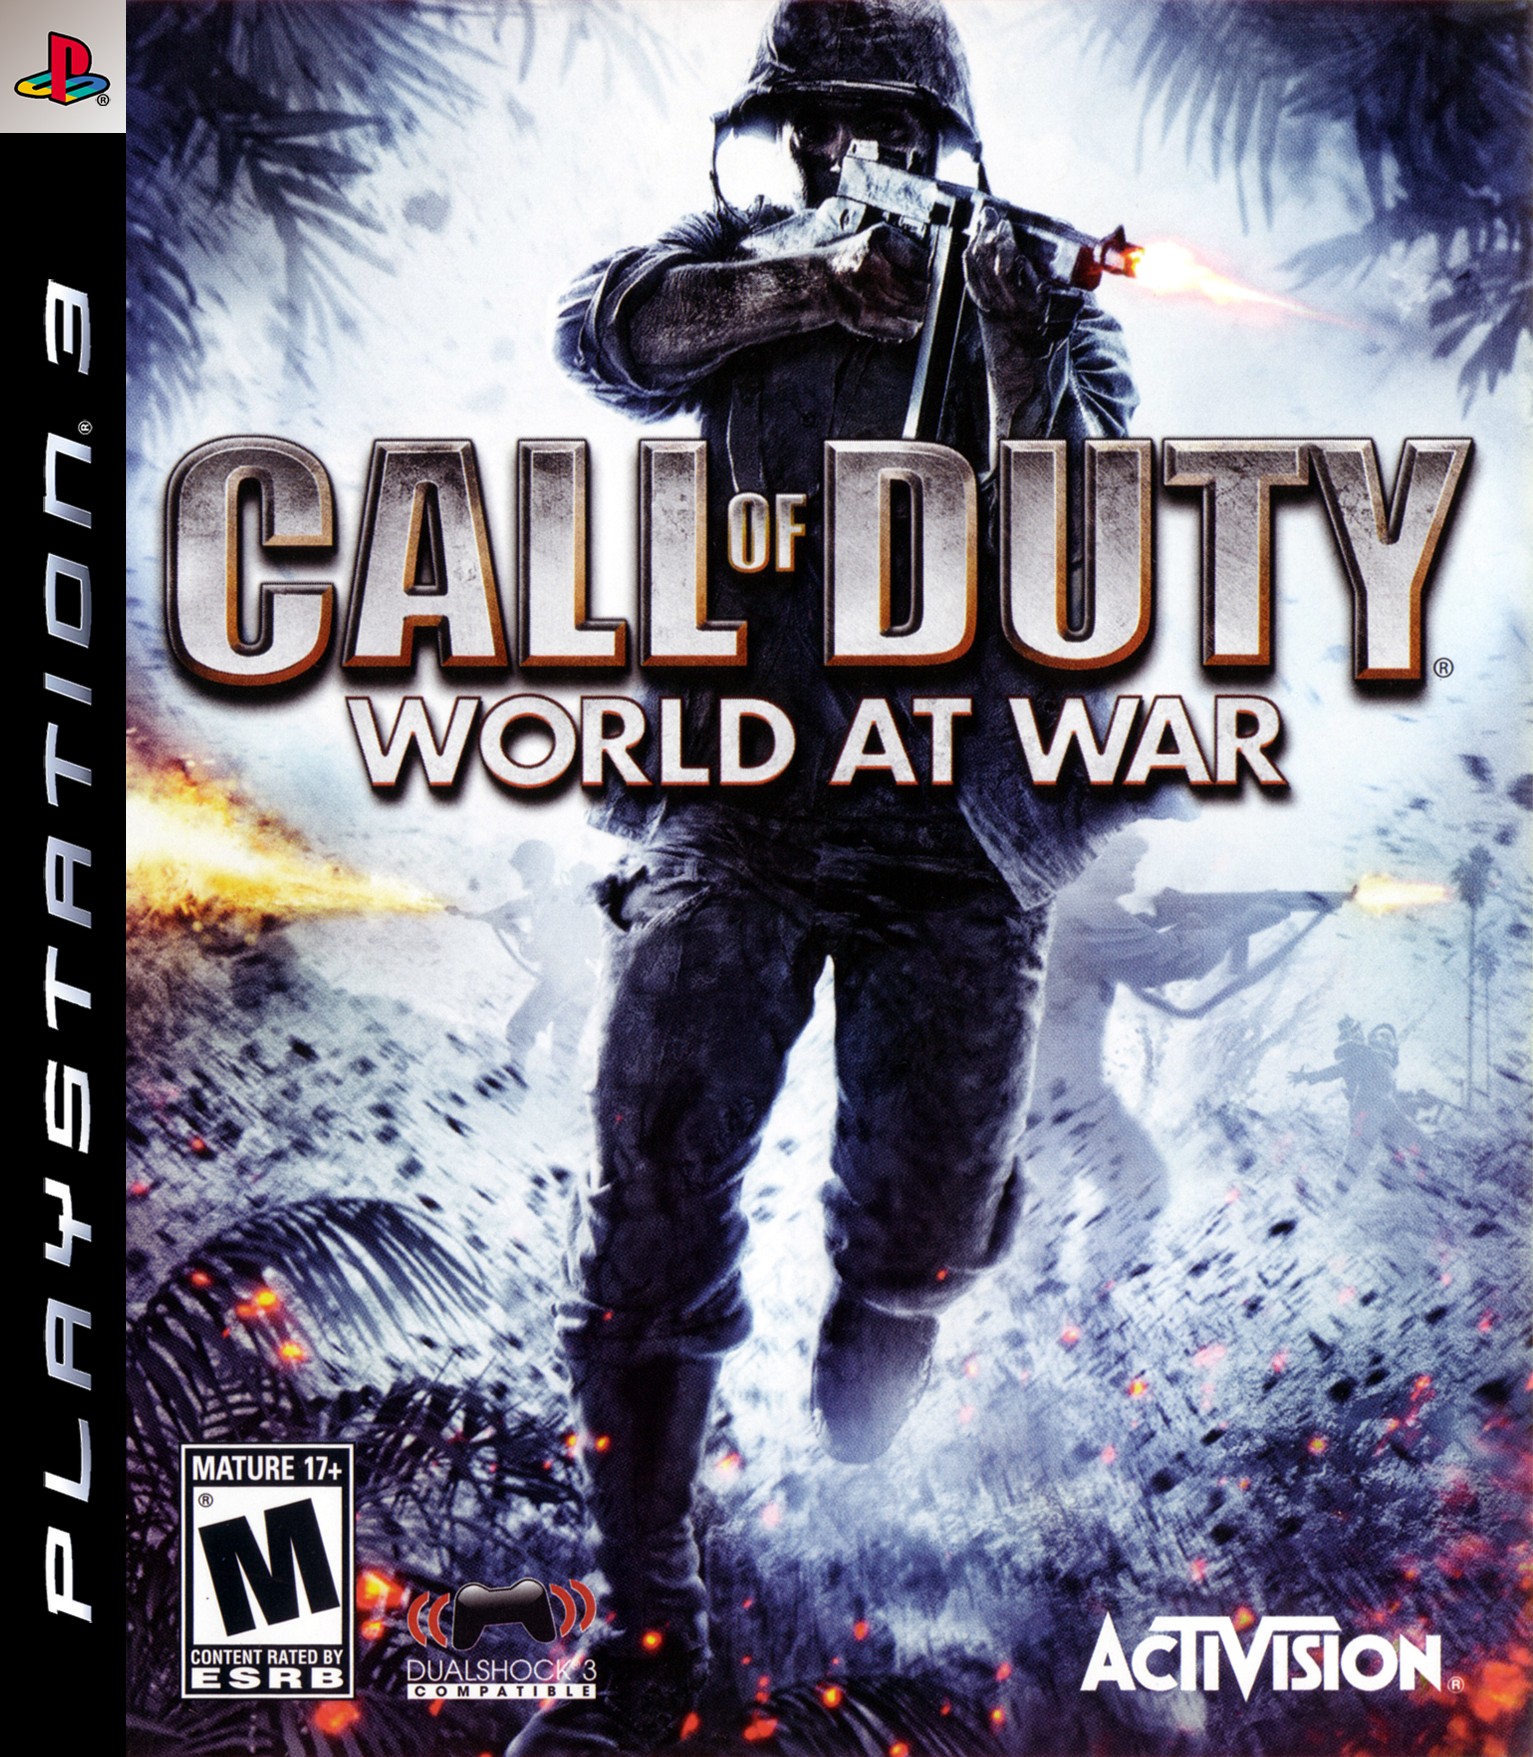 'Call of Duty: World at War'